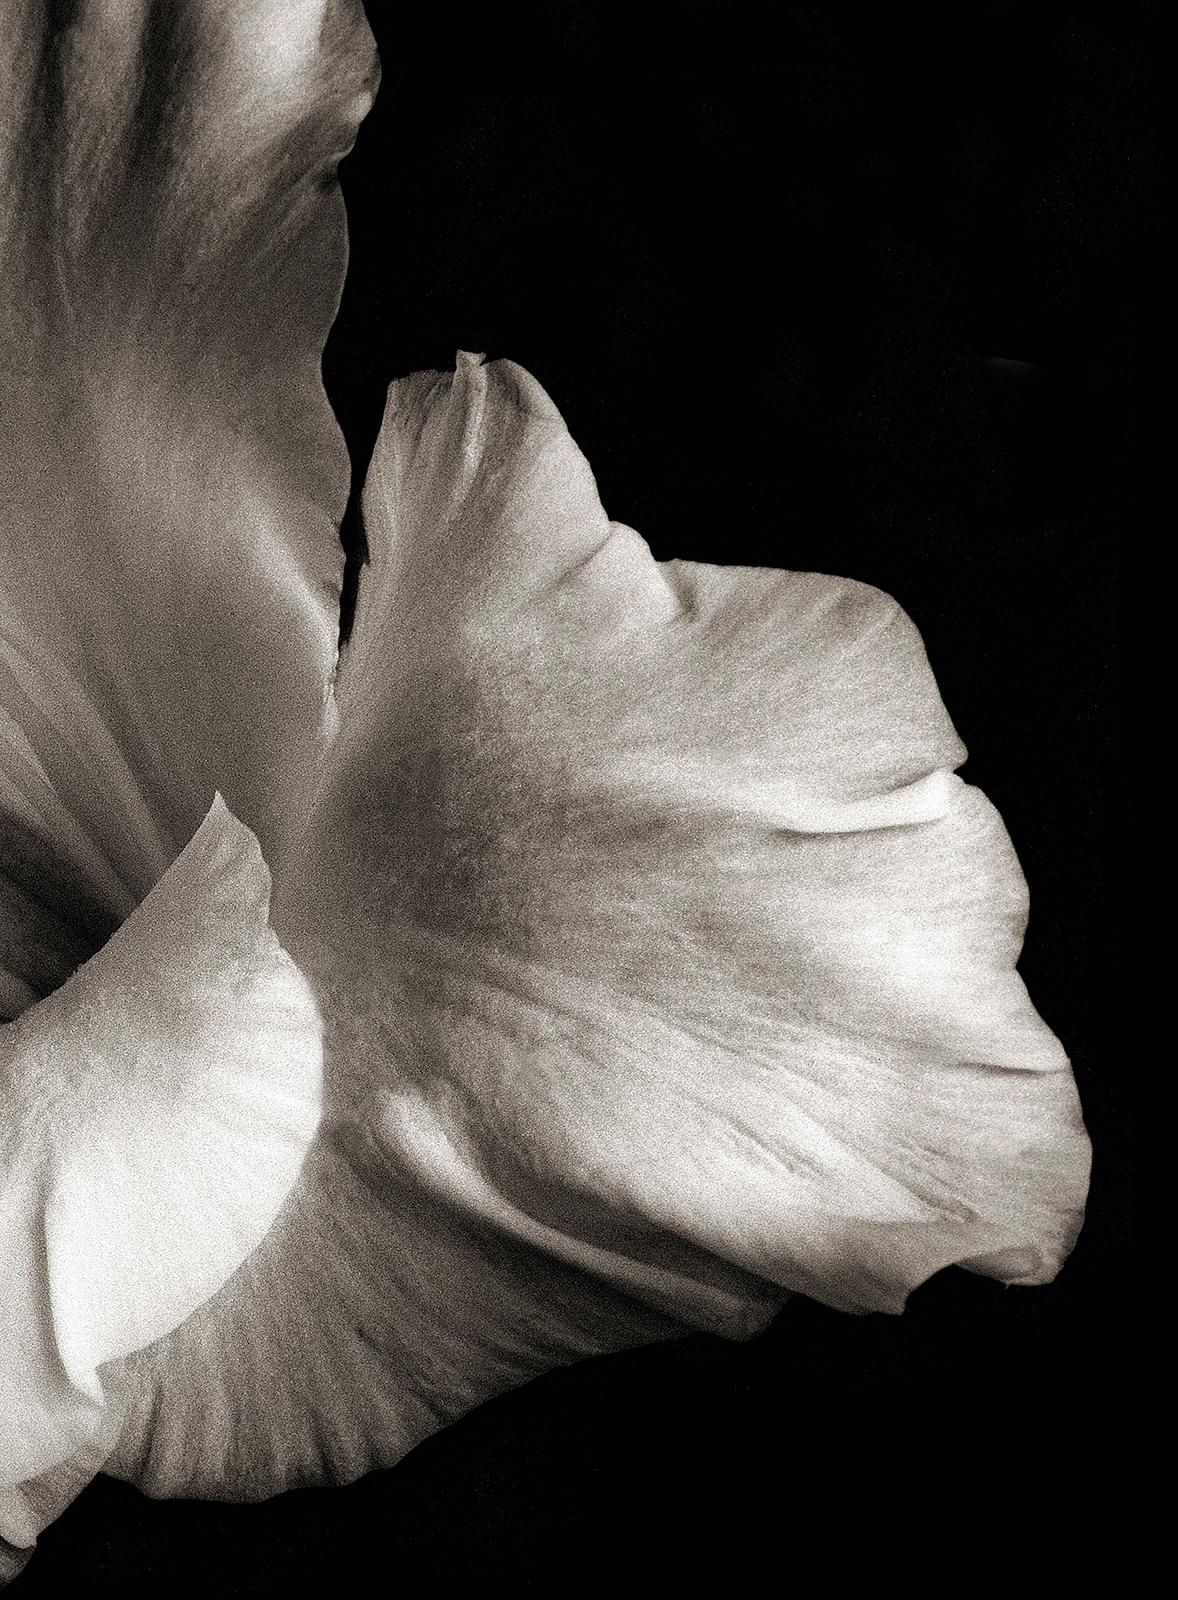 Impression florale, Analogue Contemporary, Sepia, Nature Still-life - FlowerHead  - Contemporain Photograph par Ian Sanderson